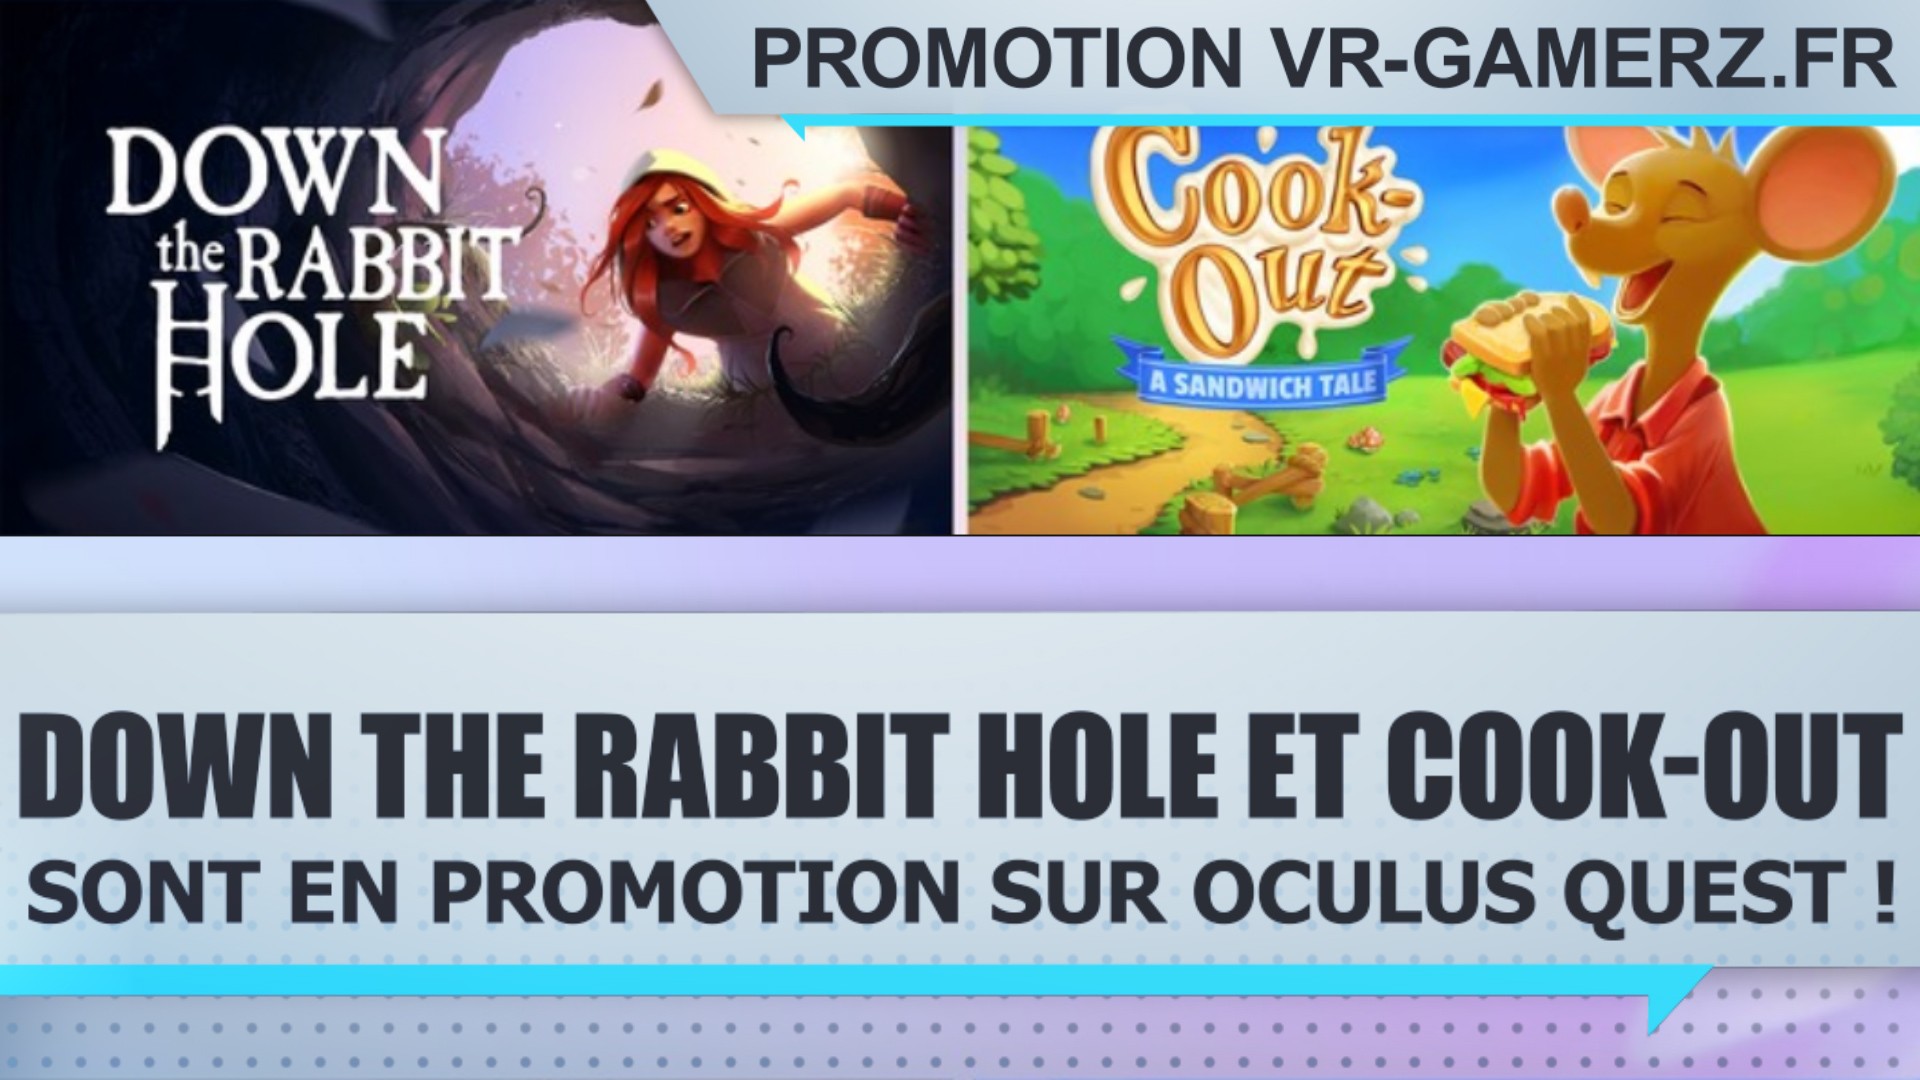 Down the Rabbit Hole et Cook-out sont en promotion sur Oculus quest !